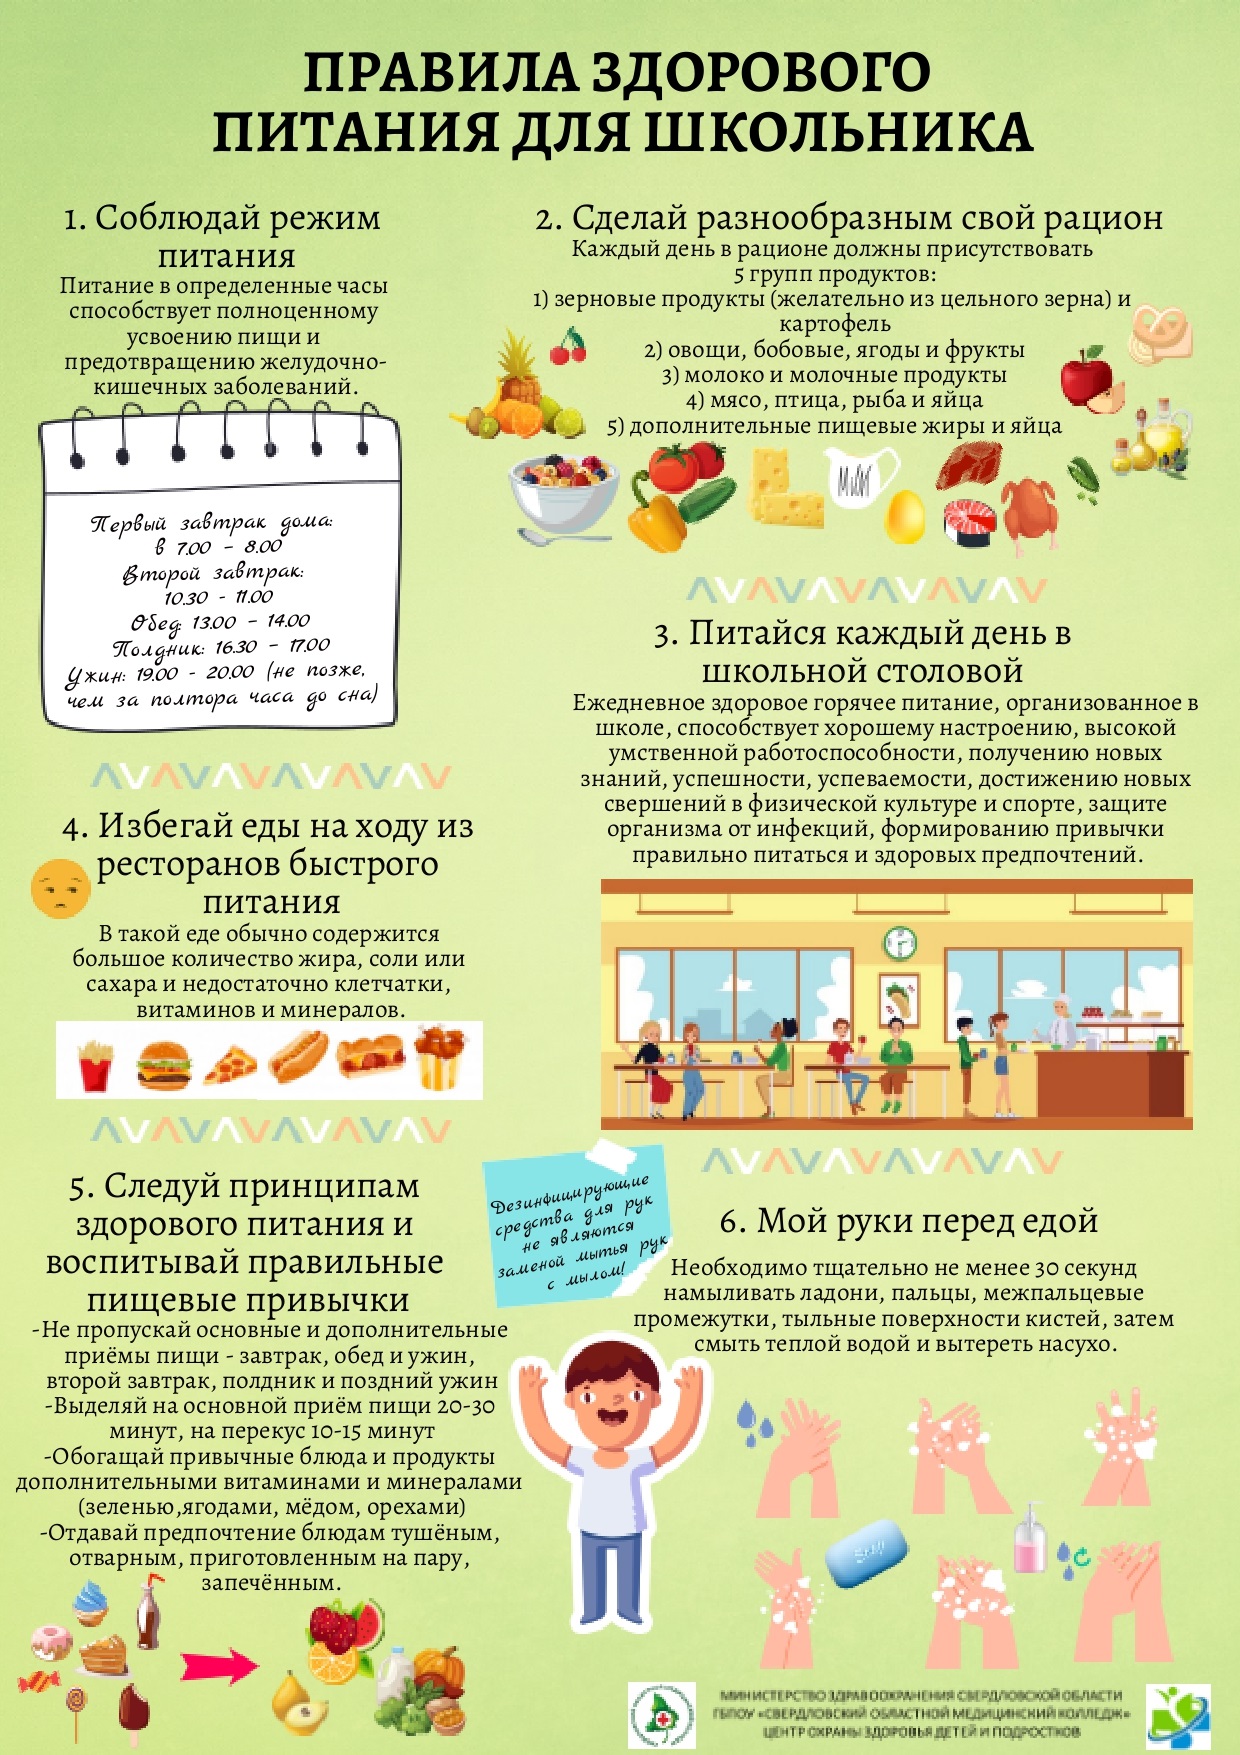 Правила здорового питания для школьников page 0001